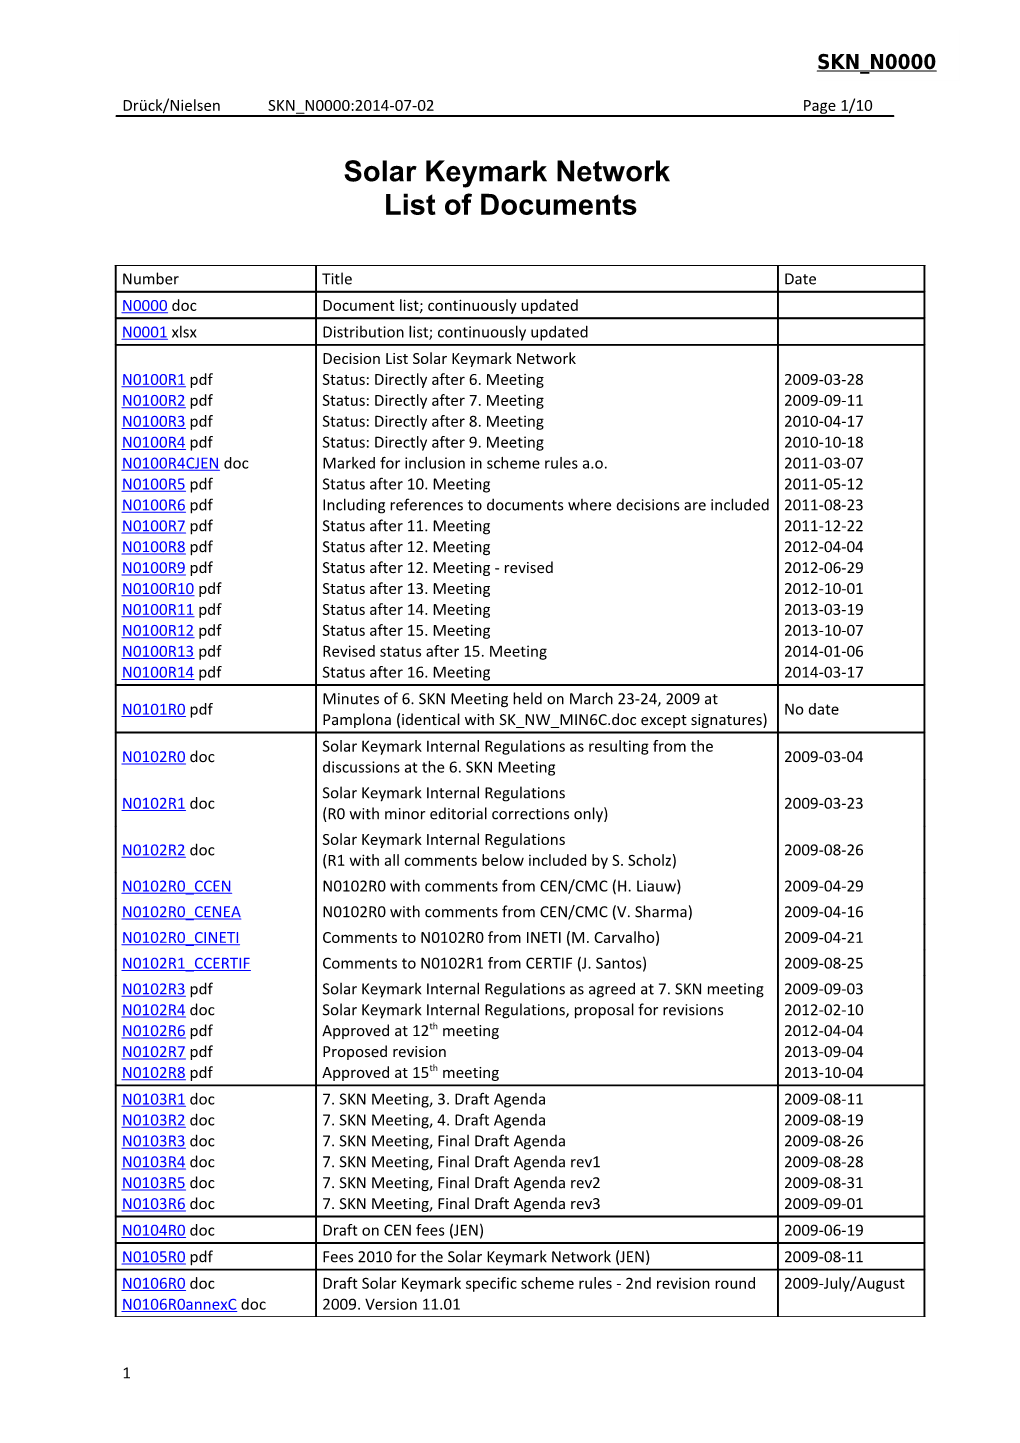 SKN Document List